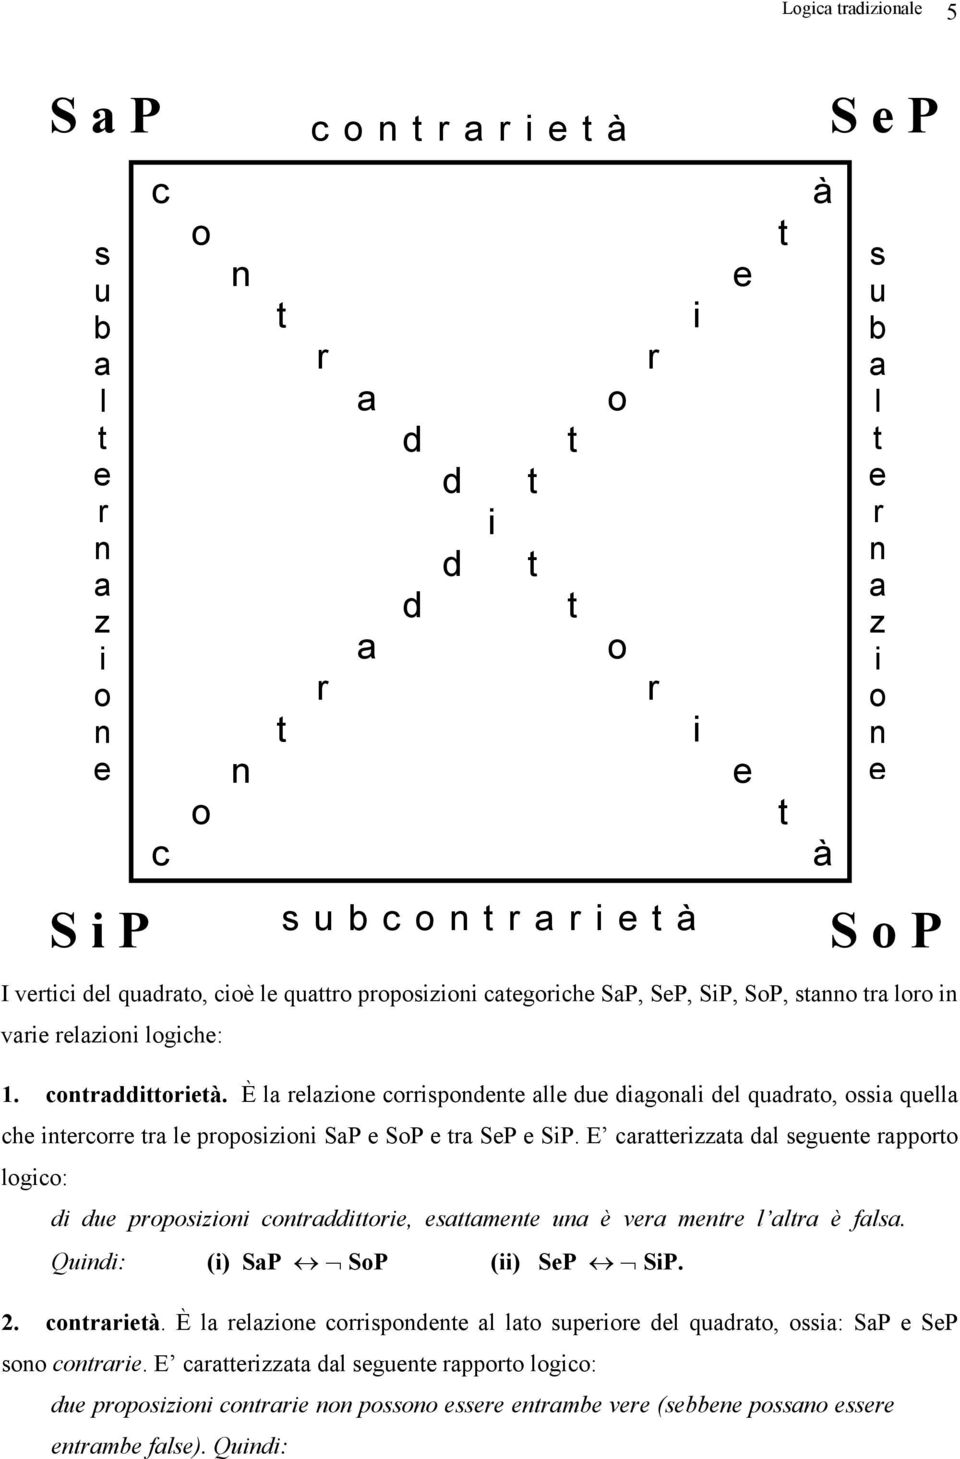 È la relazione corrispondene alle due diagonali del quadrao, ossia quella che inercorre ra le proposizioni SaP e SoP e ra SeP e SiP.